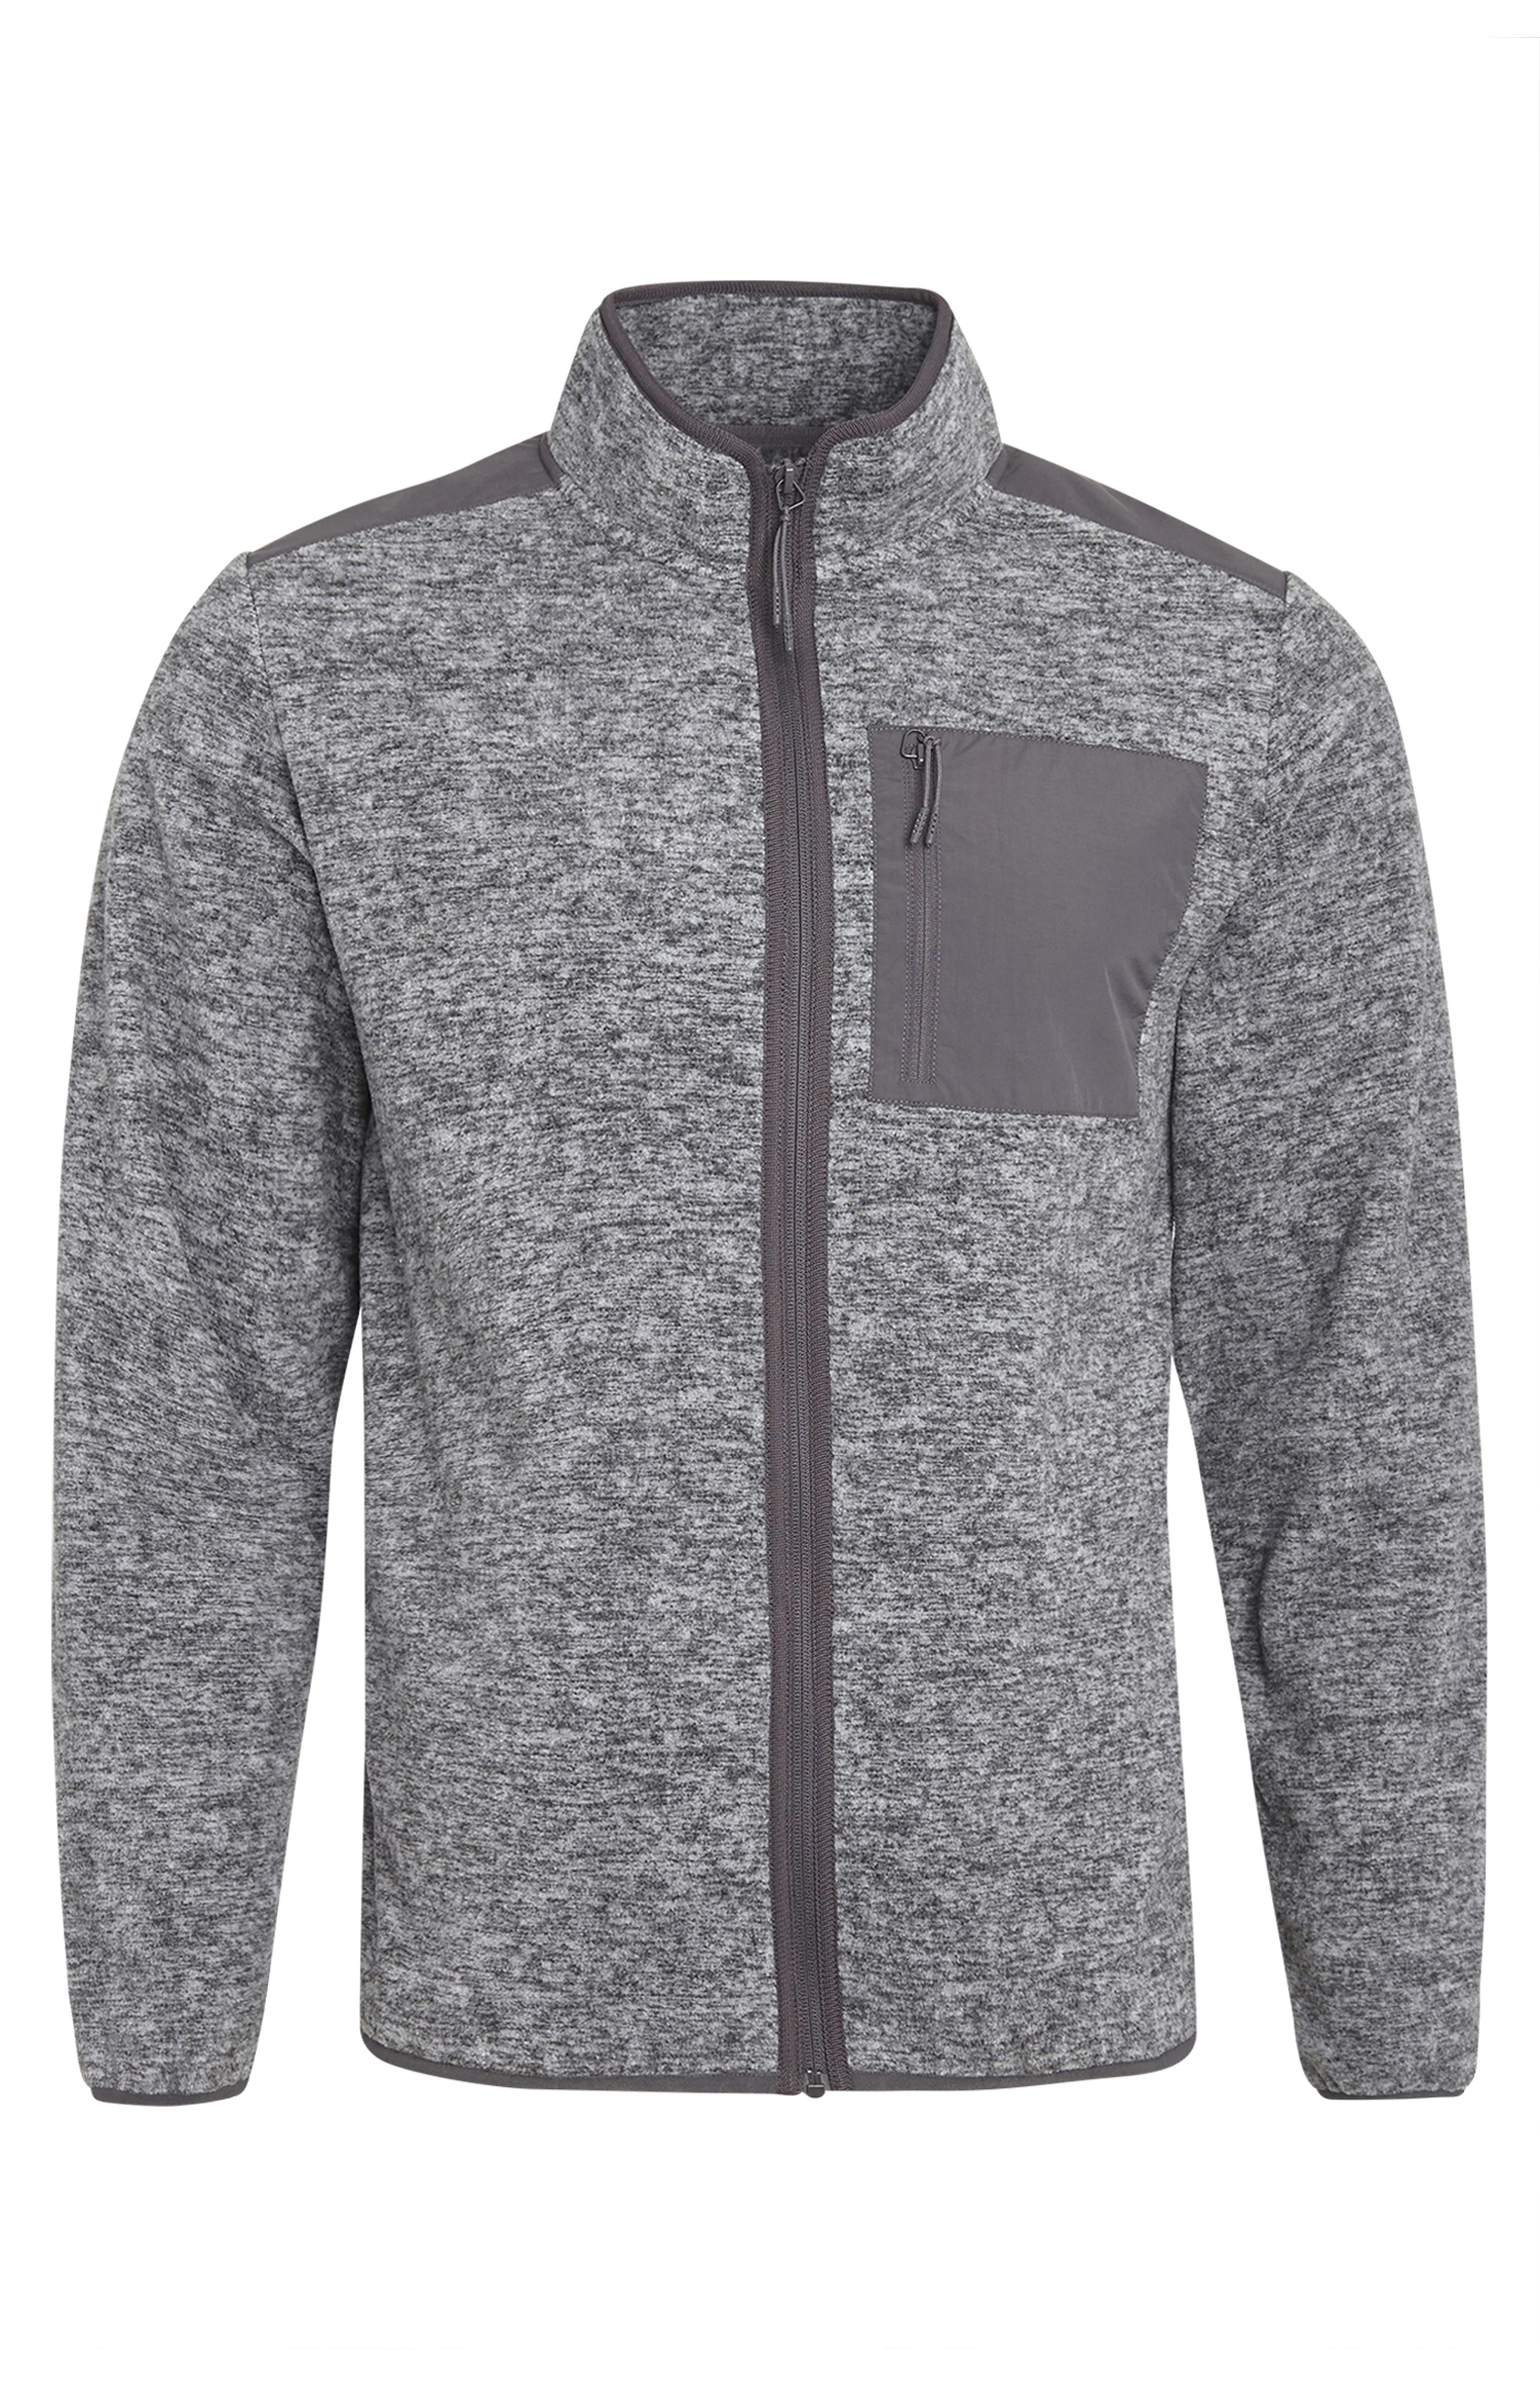 Grey Zip Up Fleece Pocket Jacket | Men's Hoodies & Sweatshirts | Men's ...